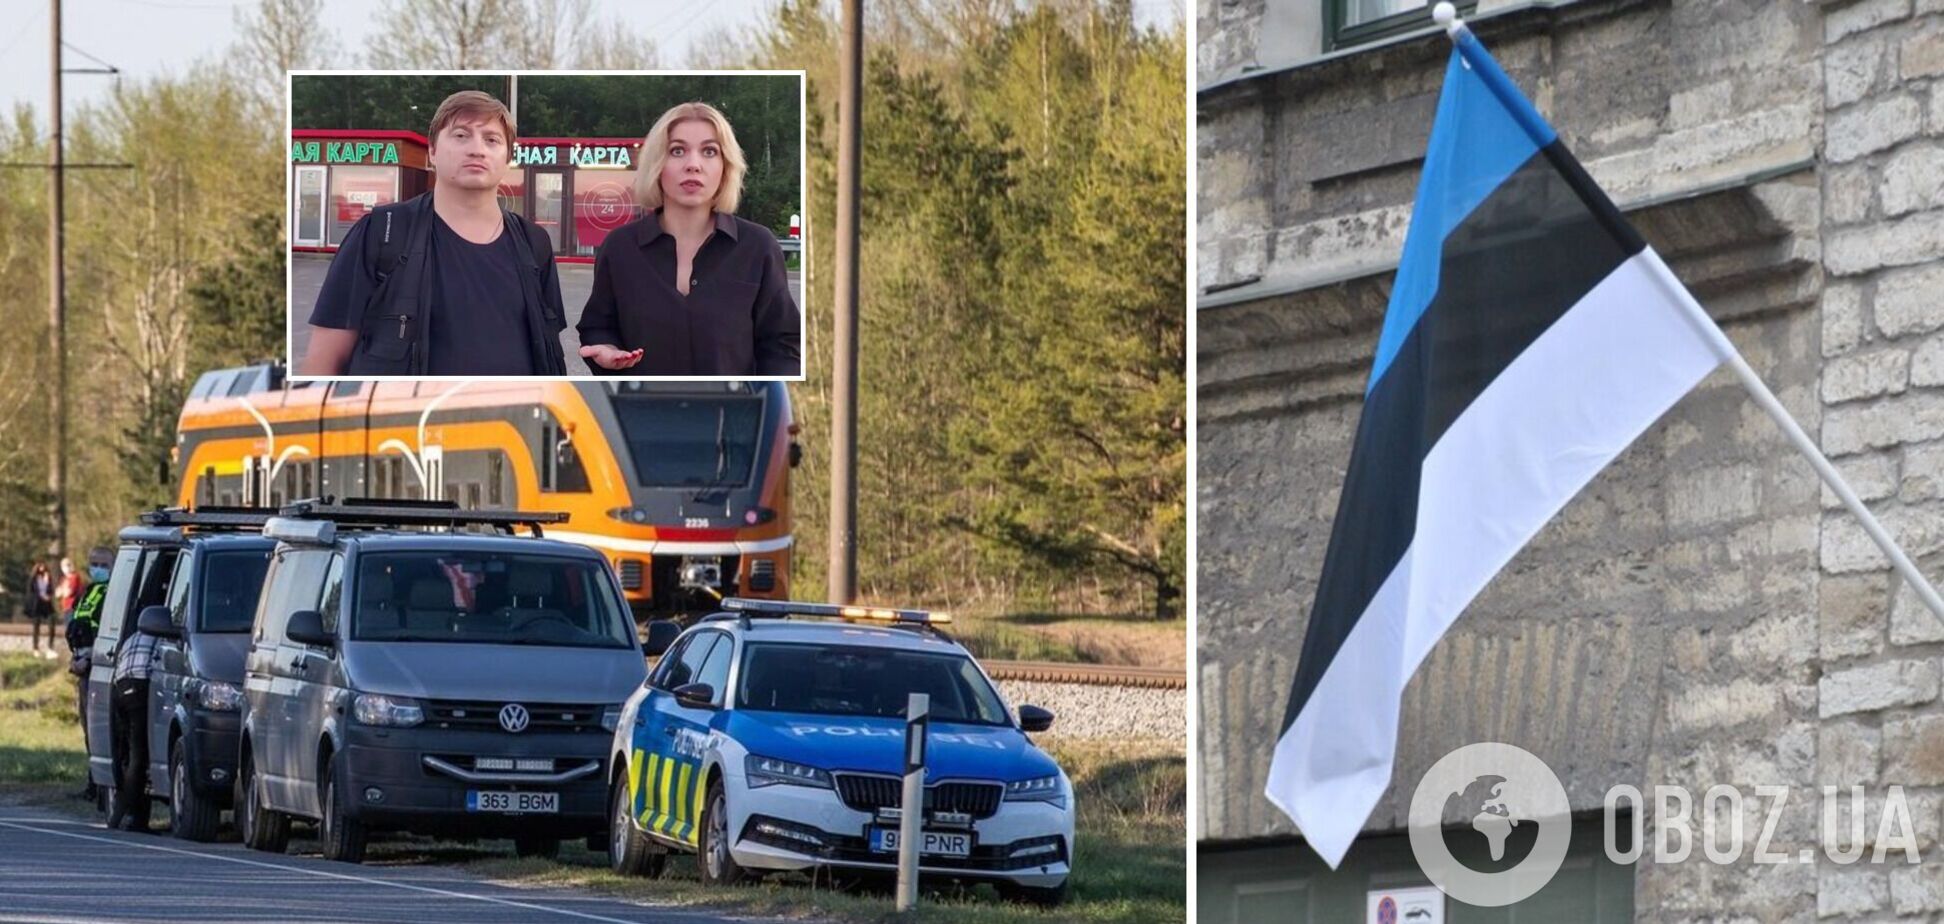 Сняли с поезда: из Эстонии выслали российских пропагандистов